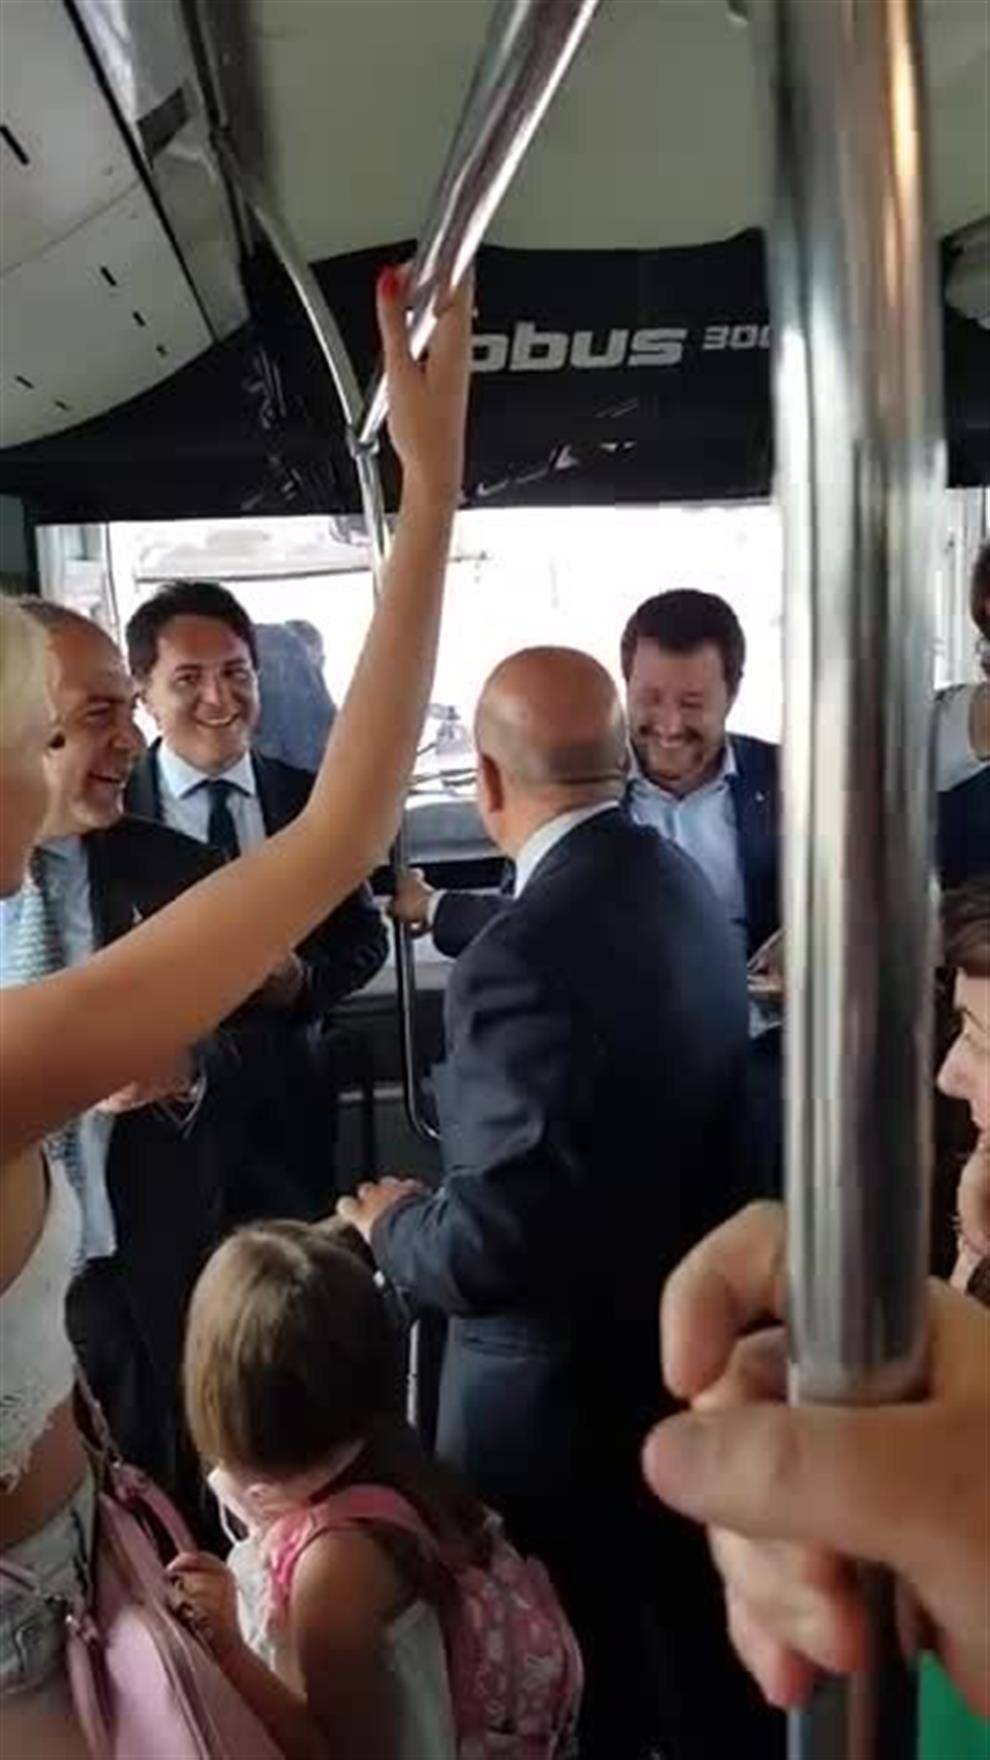 Salvini sale sulla navetta, i passeggeri cantano "Bella ciao"